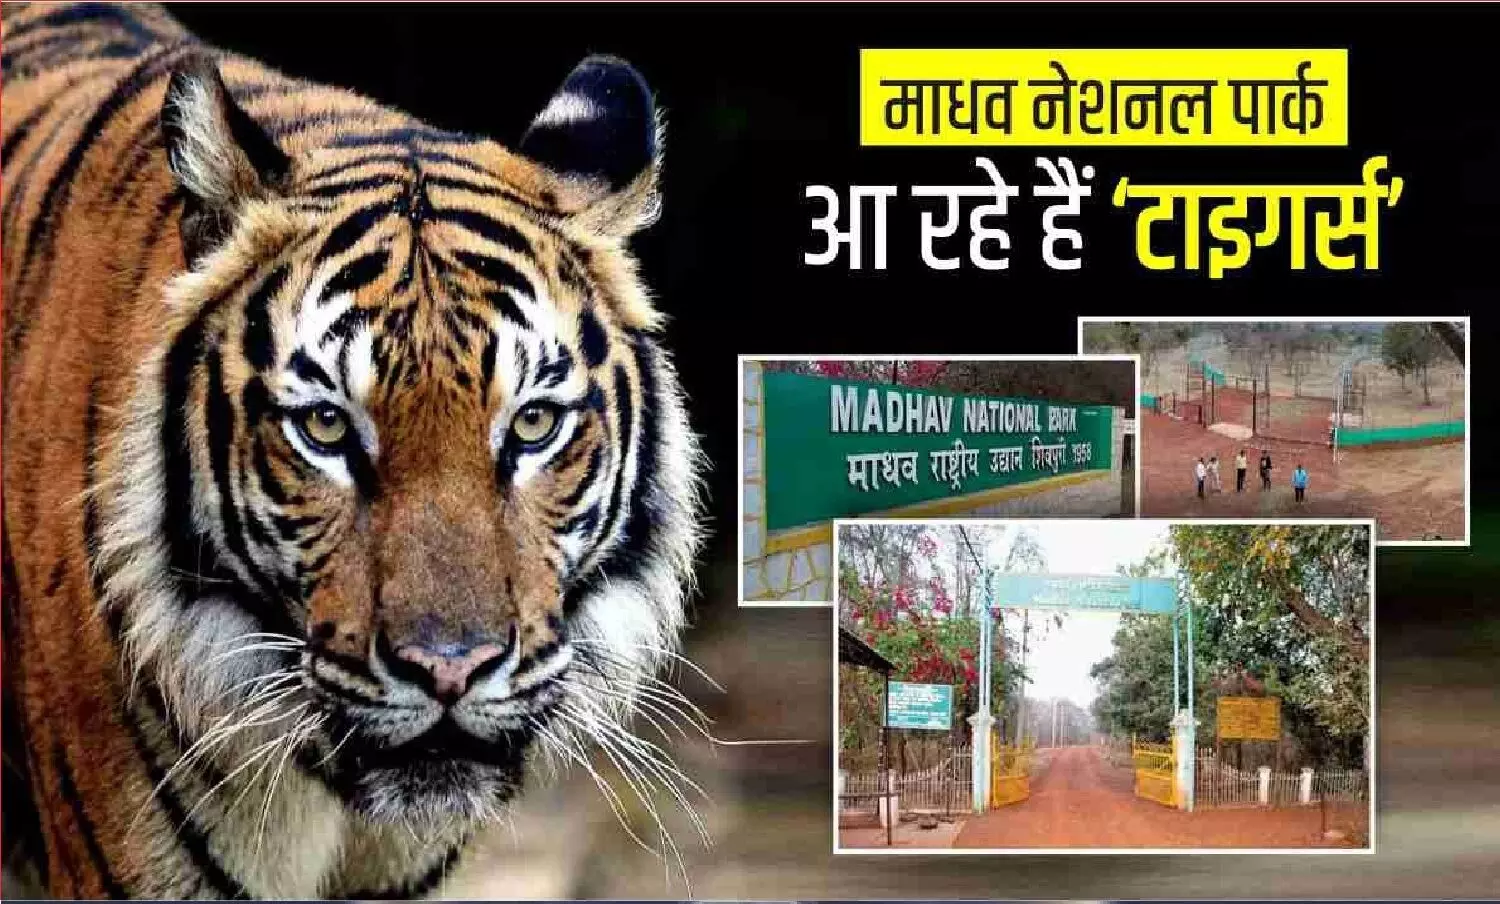 मध्य प्रदेश: शिवपुरी के माधव नेशनल पार्क में छोड़े जाएंगे दो बाघ के जोड़े